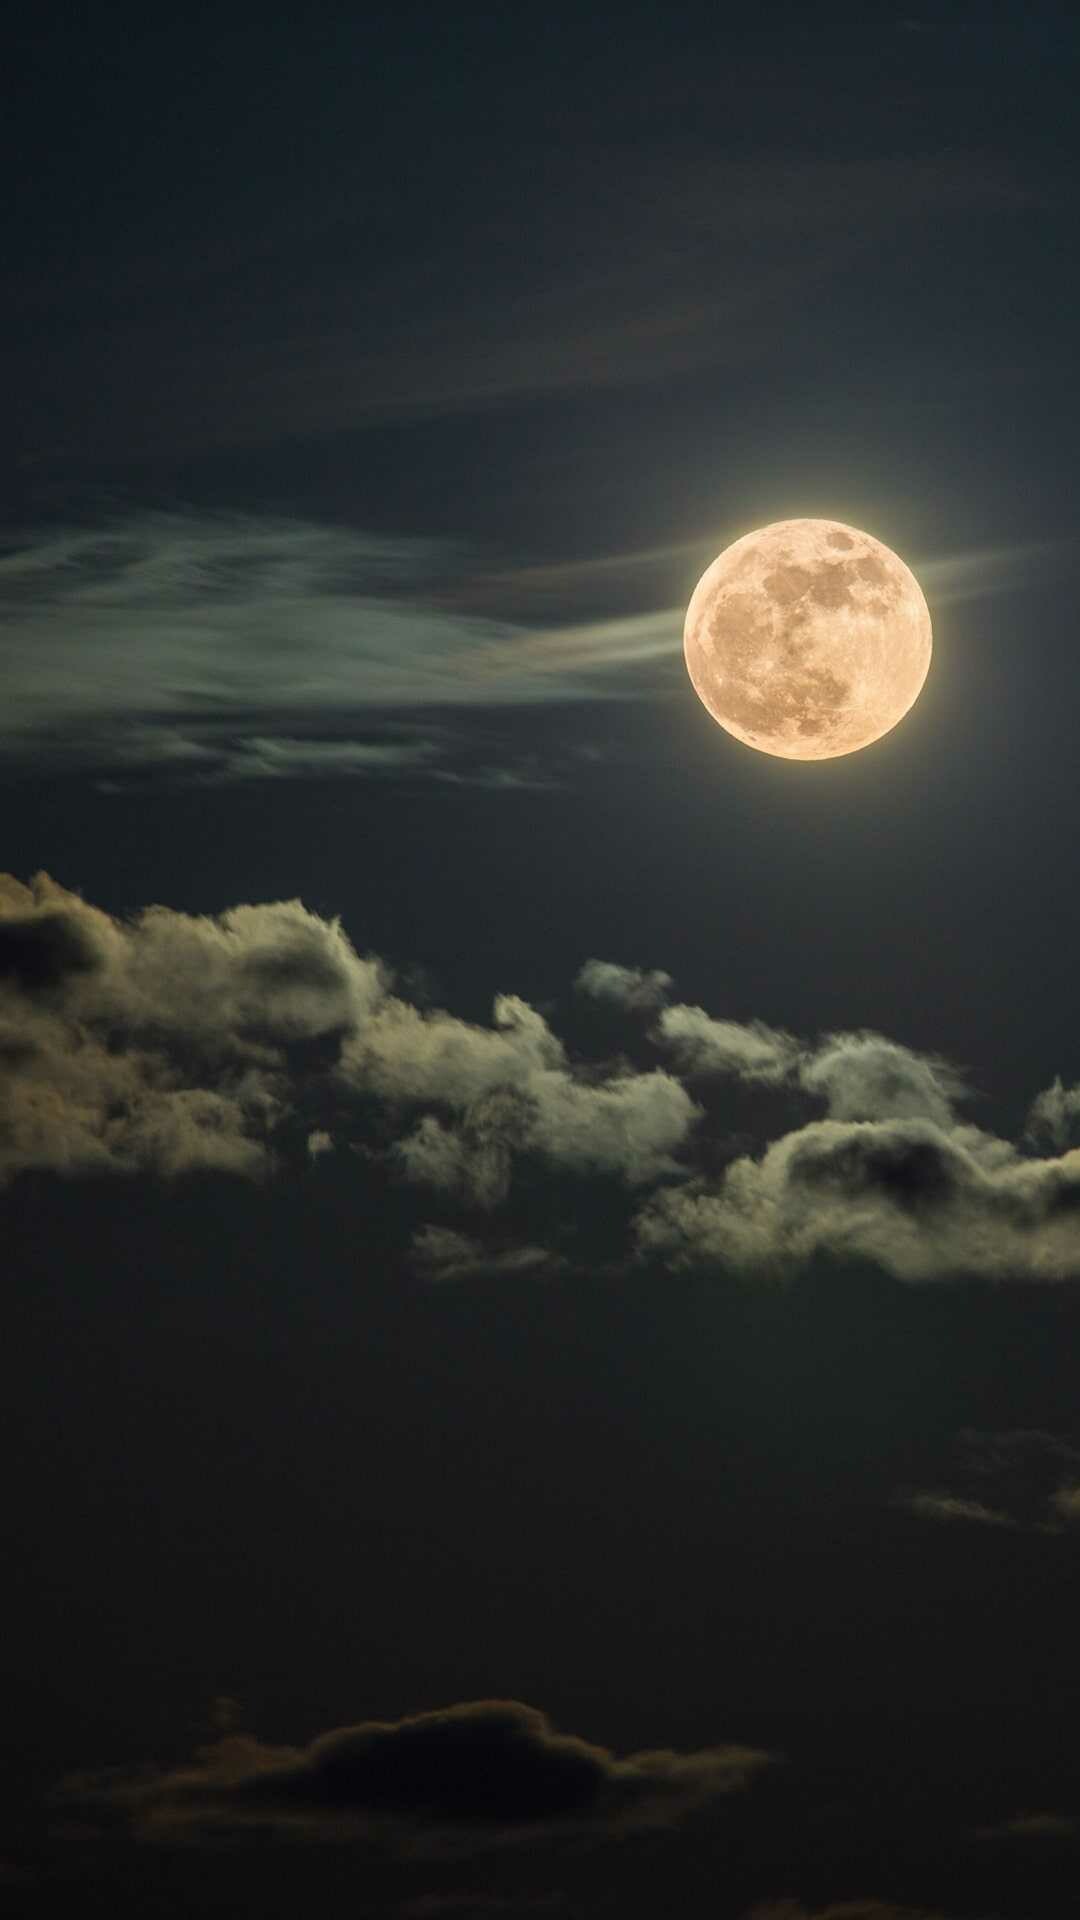 Moonlight: Celestial bodies, Full Moon, The lunar phase. 1080x1920 Full HD Wallpaper.